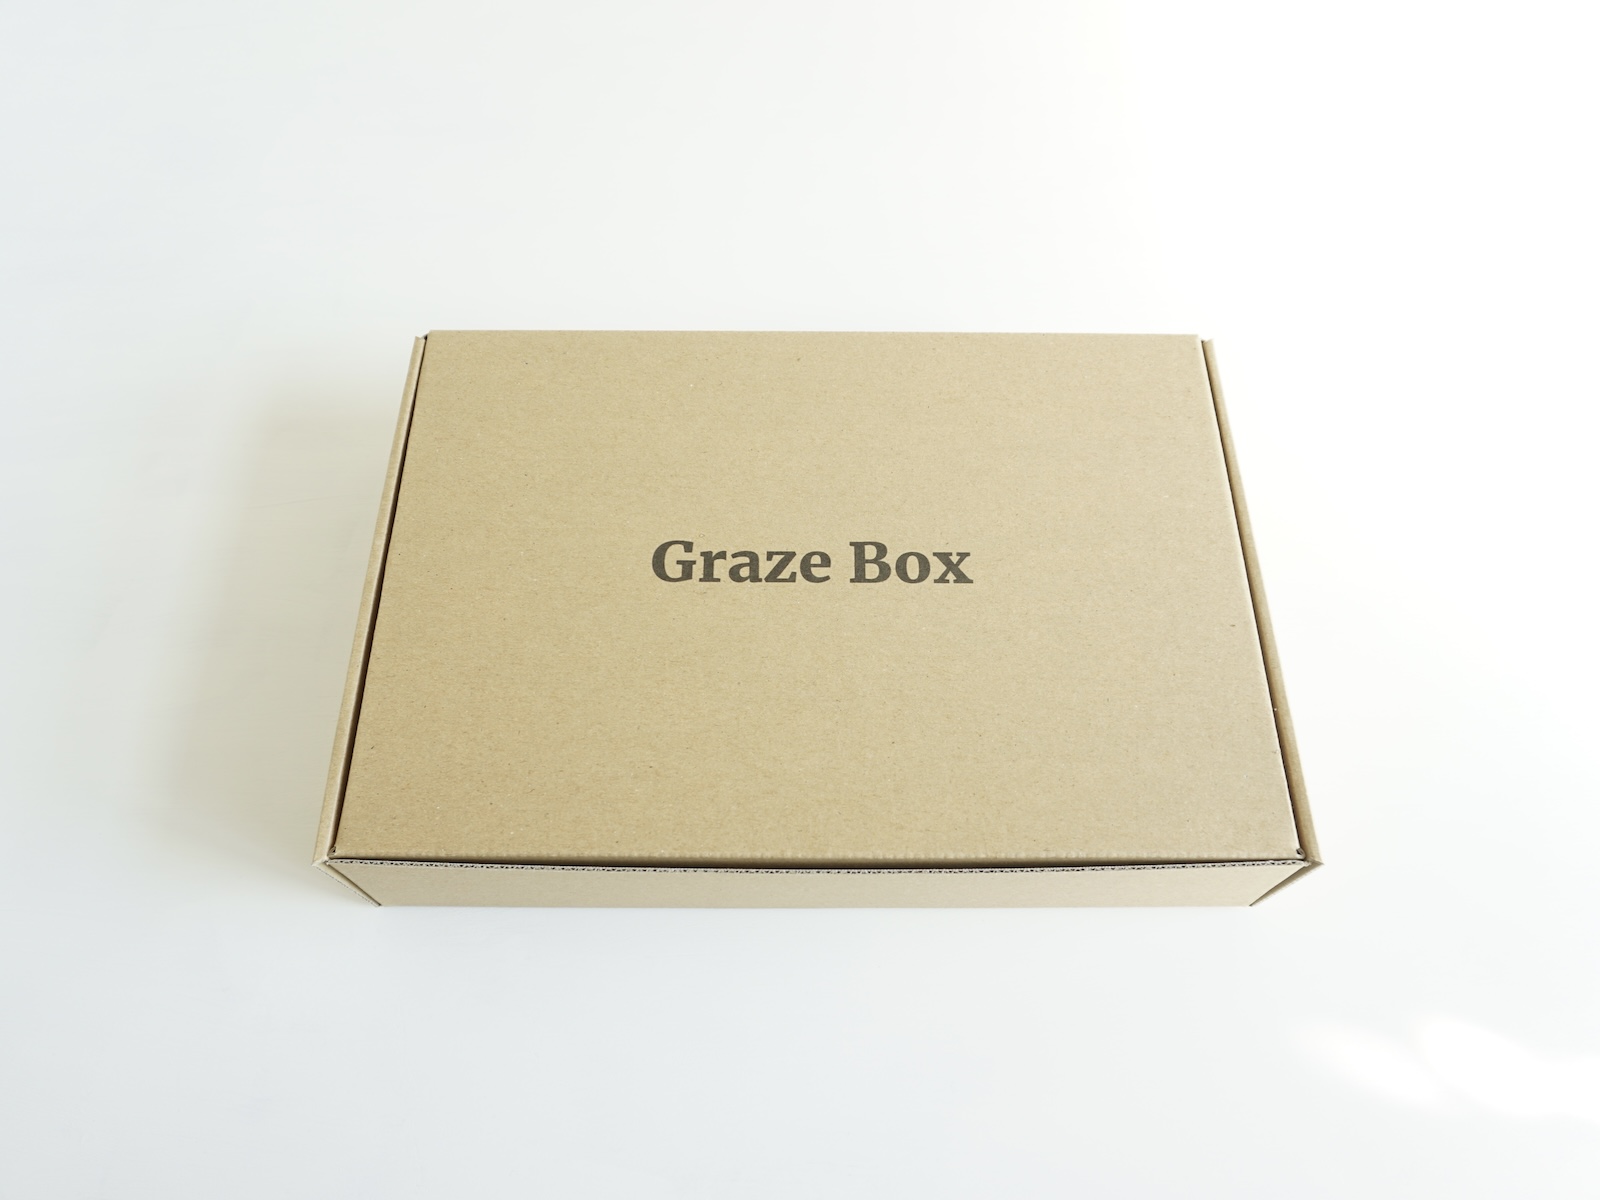 Graze Box